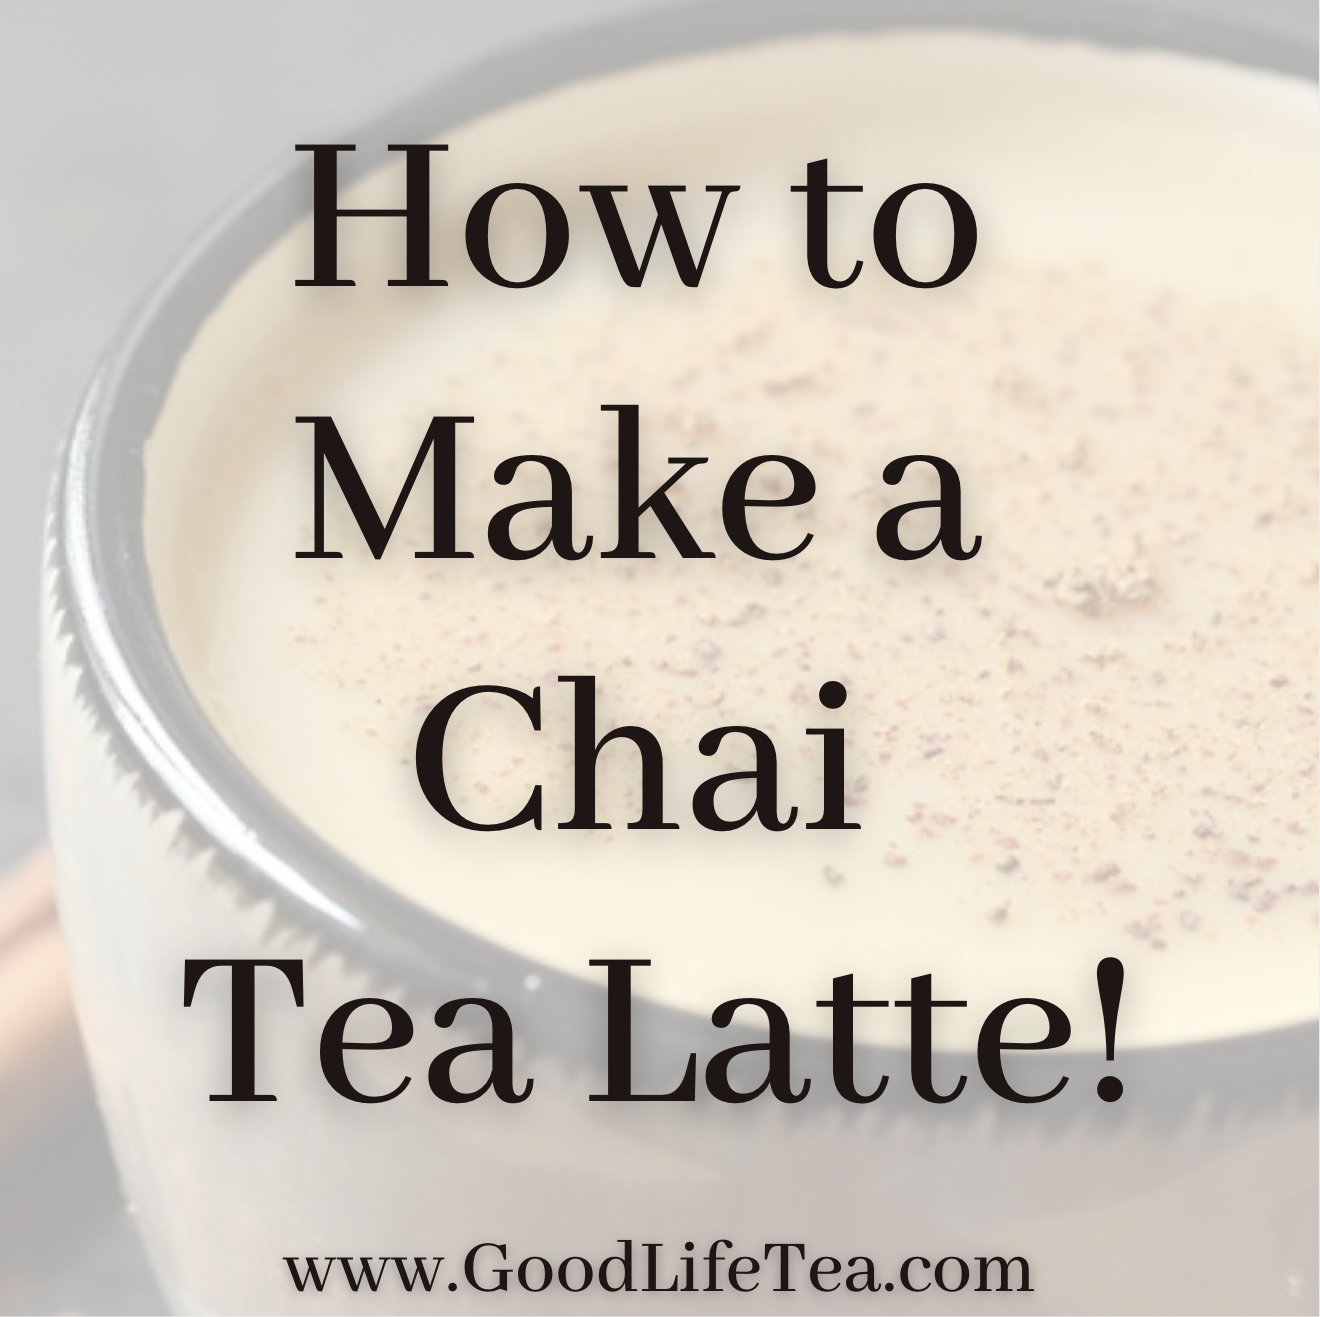 How To Make A Chai Tea Latte!